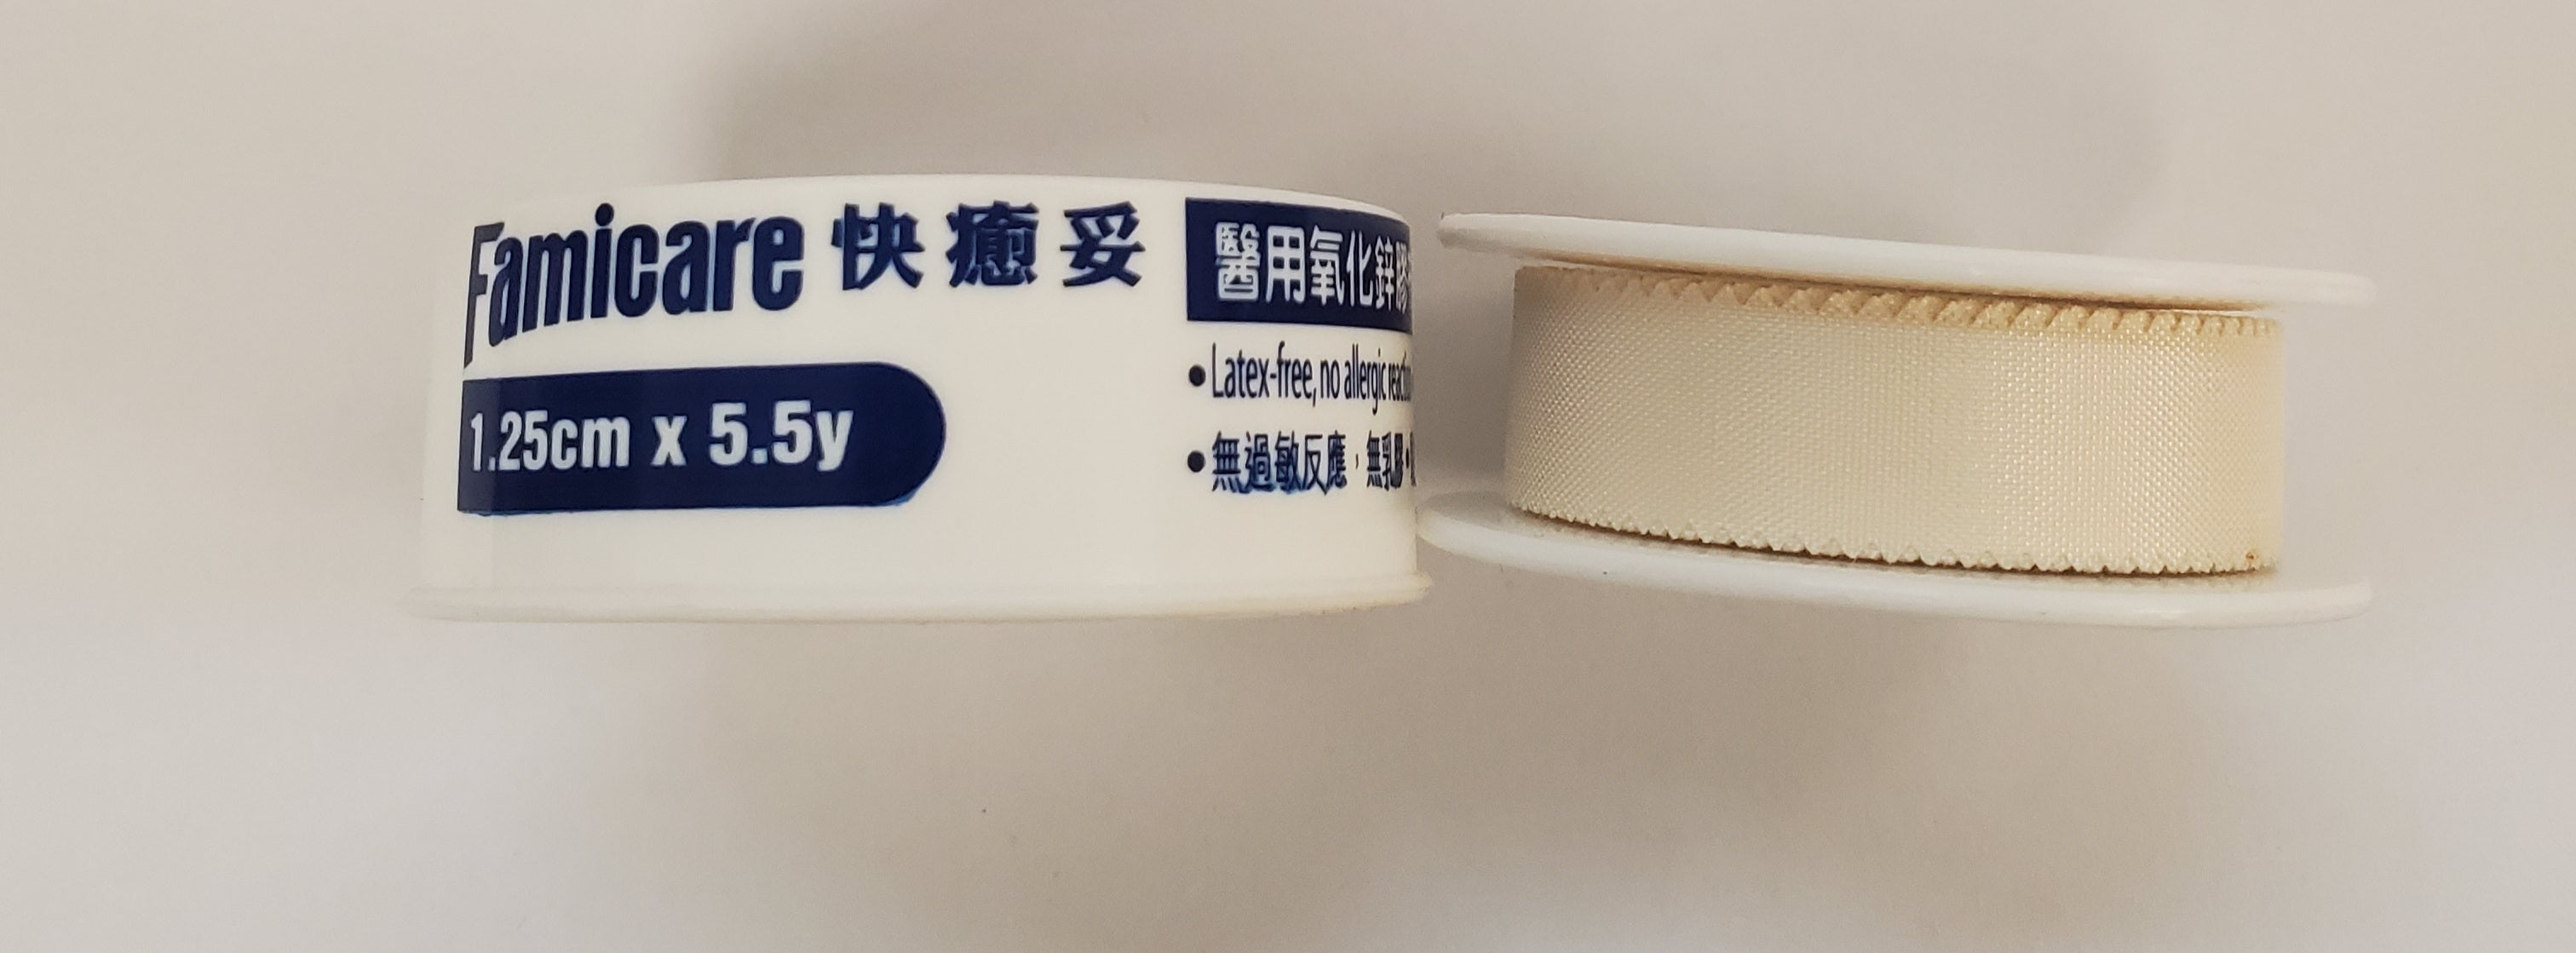 快癒妥醫用氧化鋅膠布(白色)-1.25cm X 5.5y